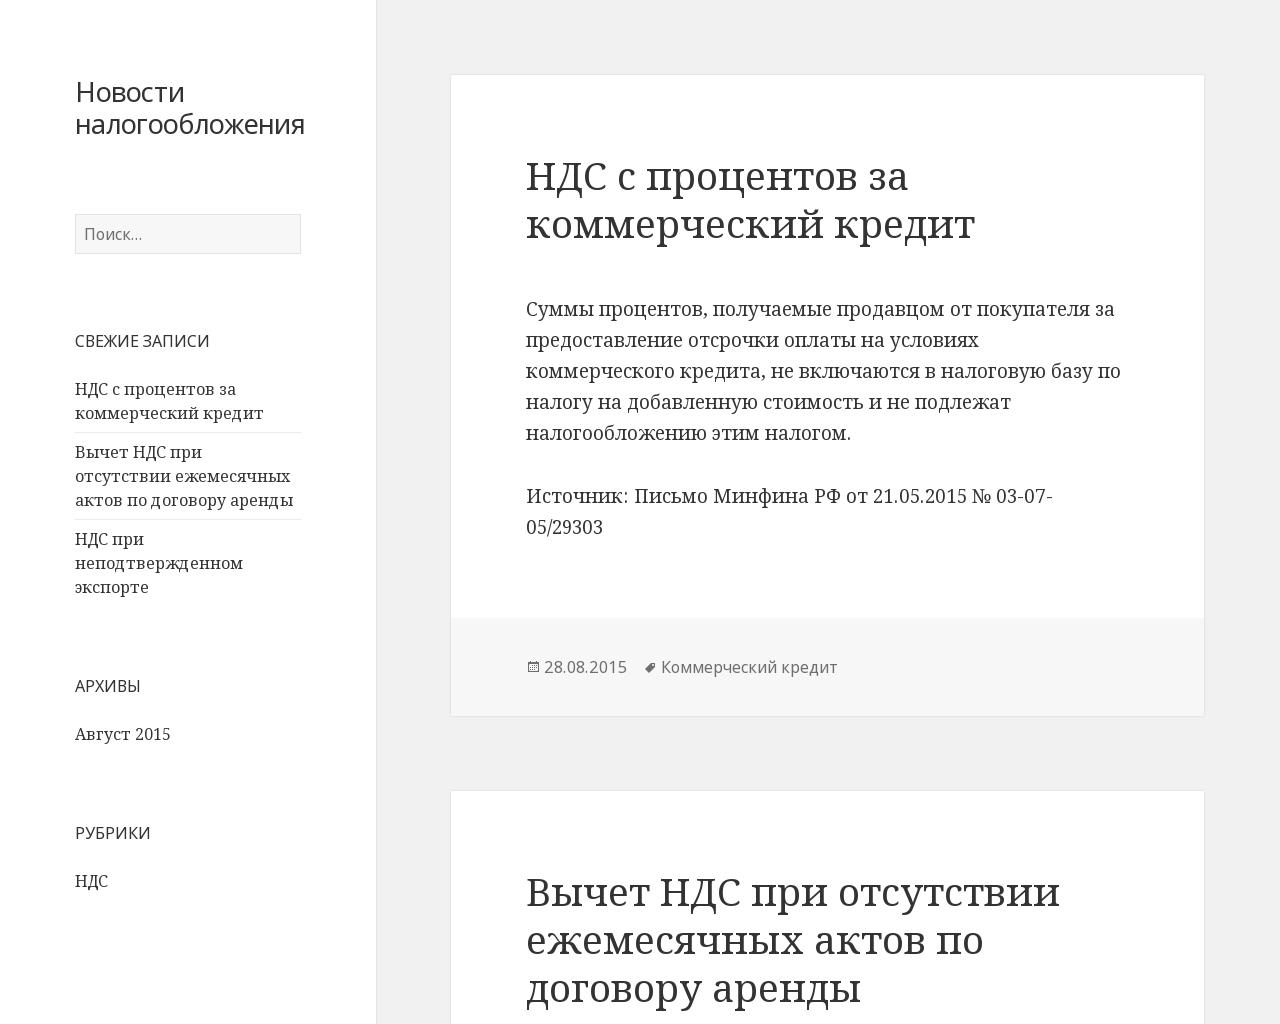 Изображение сайта anticorporative.ru в разрешении 1280x1024